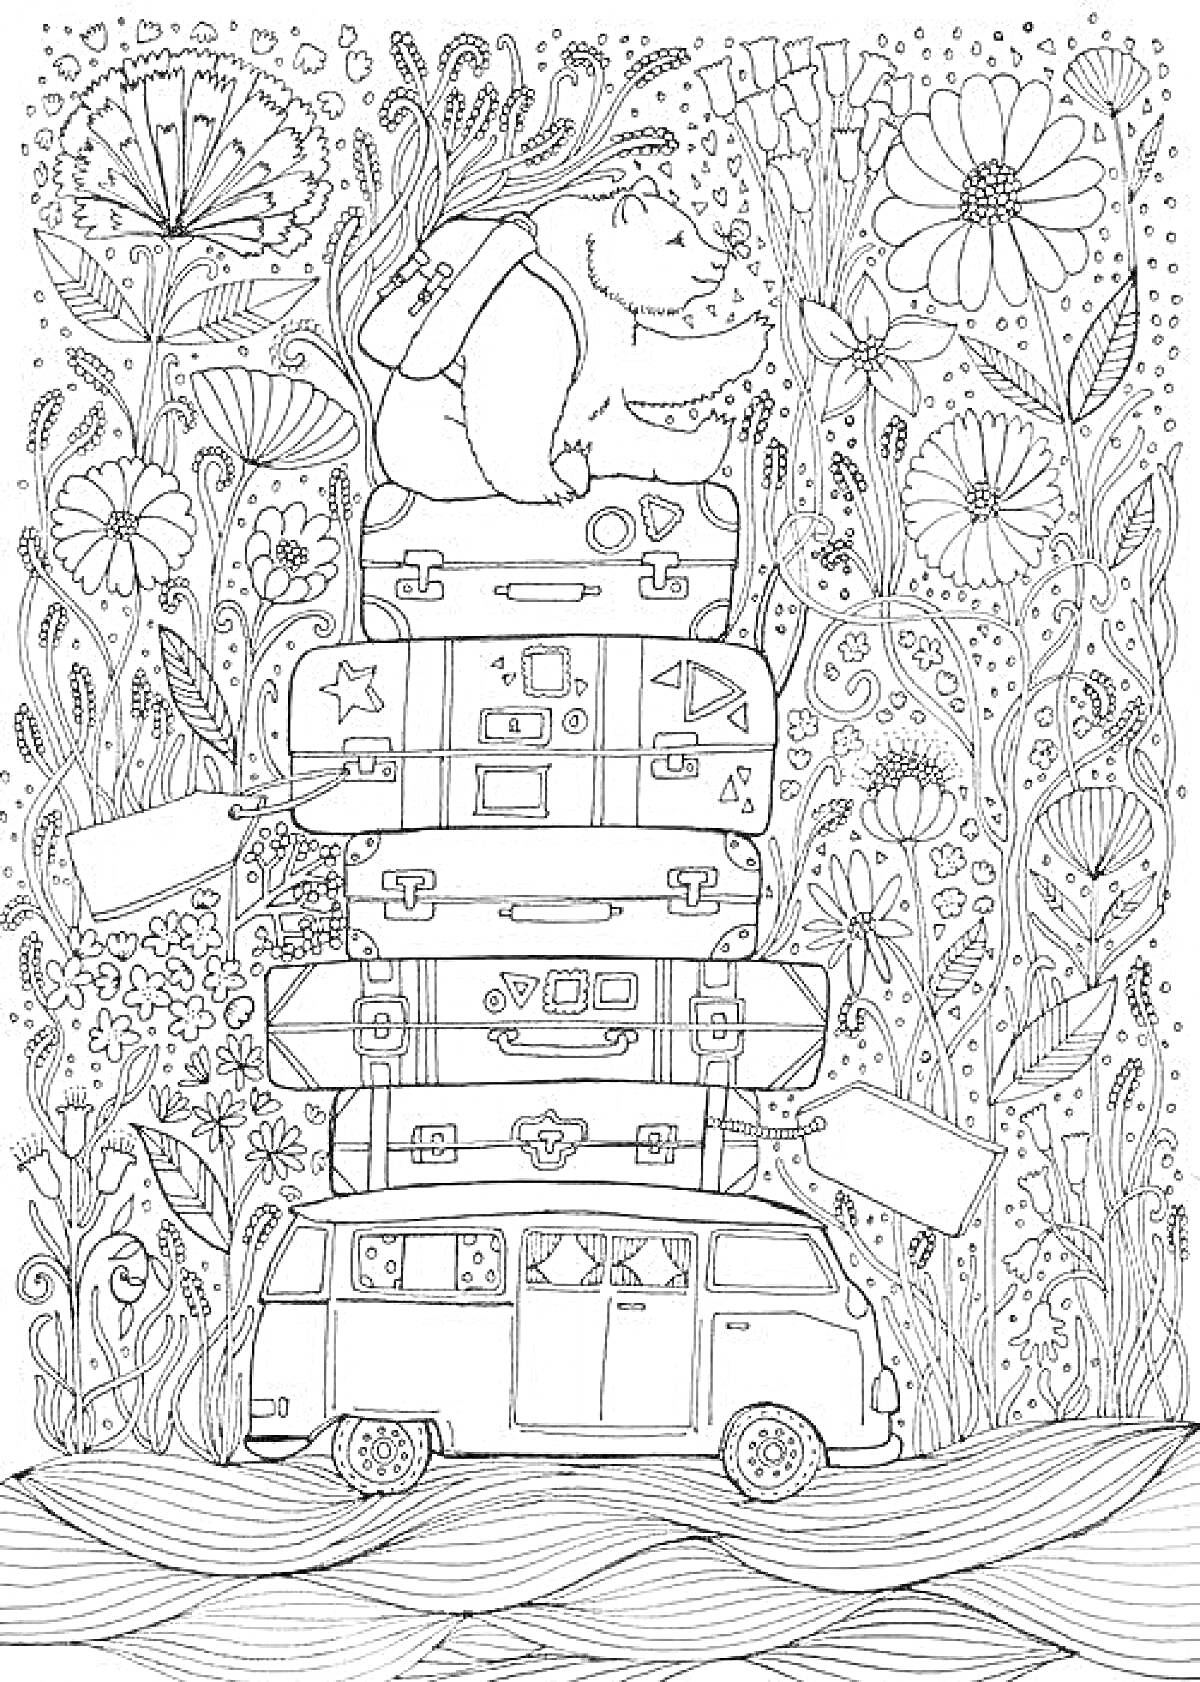 Раскраска Машина с багажом и медведем на дороге среди цветов